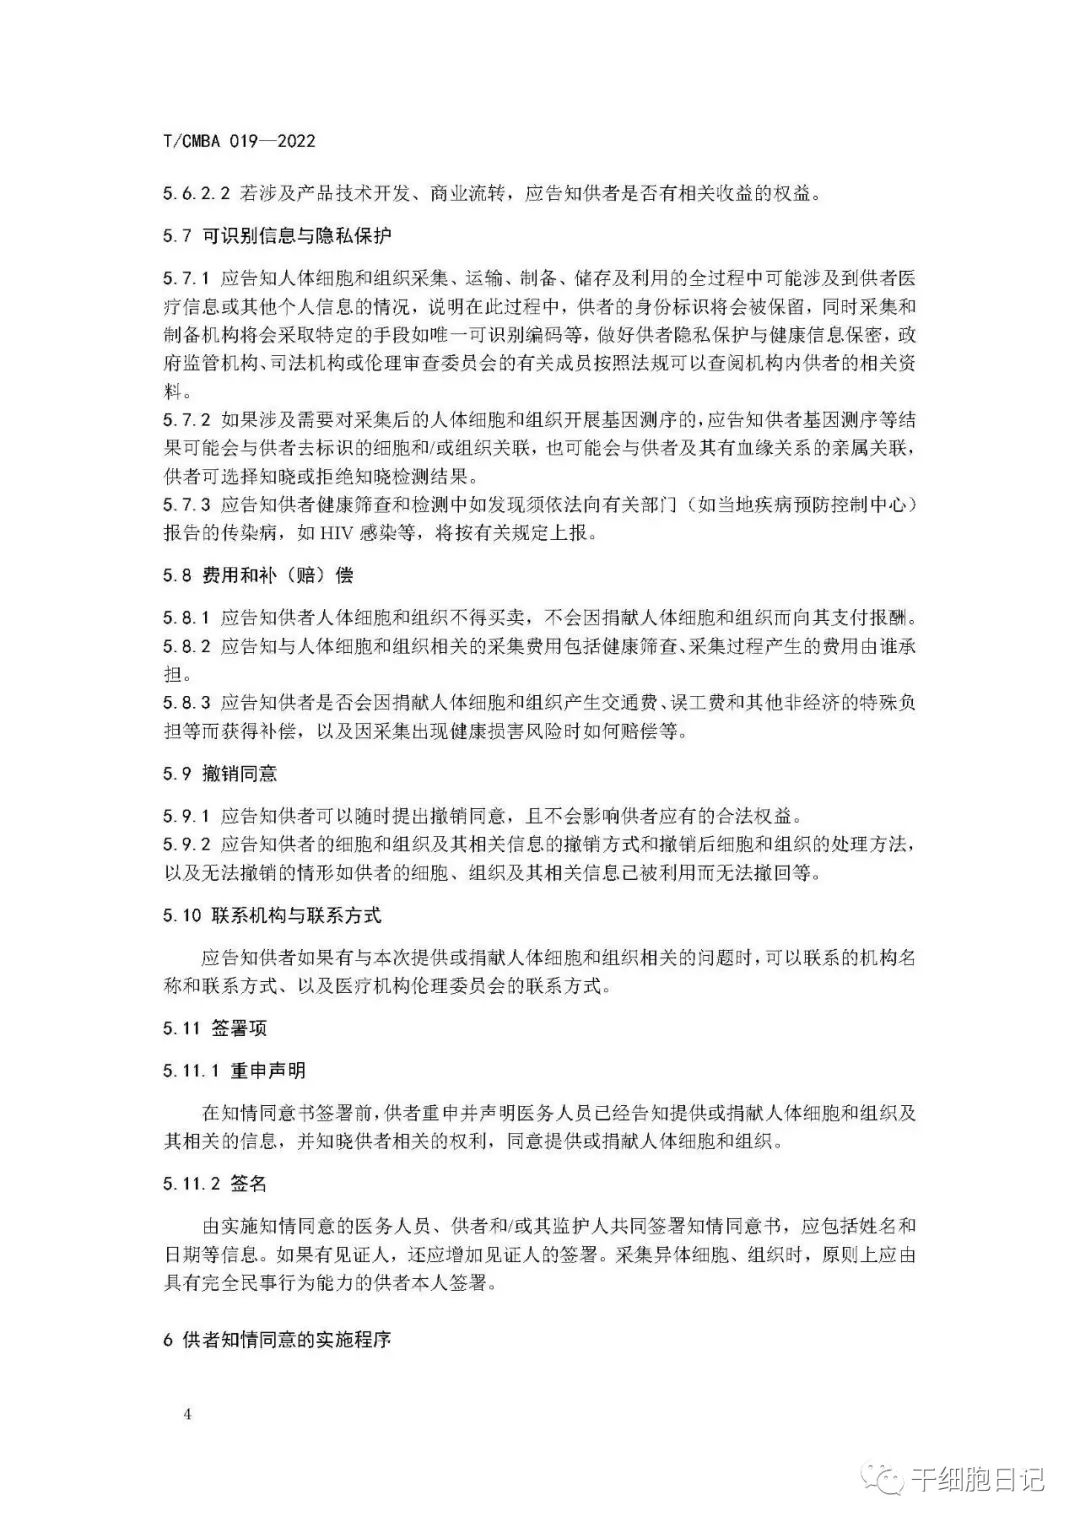 中国医药生物技术协会正式发布《干细胞供者知情同意规范》团体标准和《干细胞供者知情同意书（参考模板）》